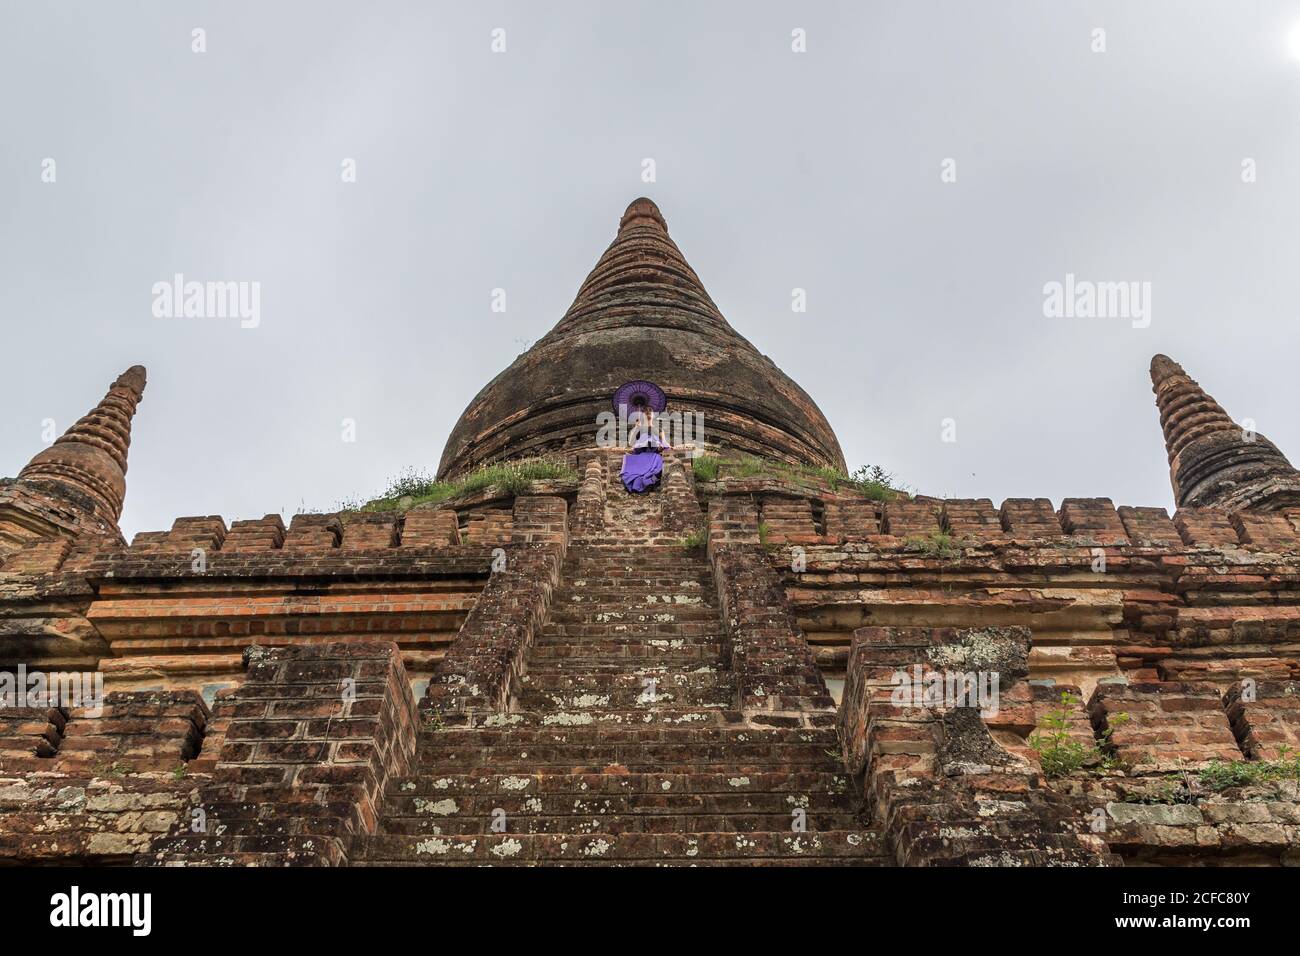 Desde abajo del antiguo templo de piedra birmano en Bagan contra gris cielo nublado con mujer en vestido púrpura sosteniendo púrpura paraguas en las escaleras Foto de stock